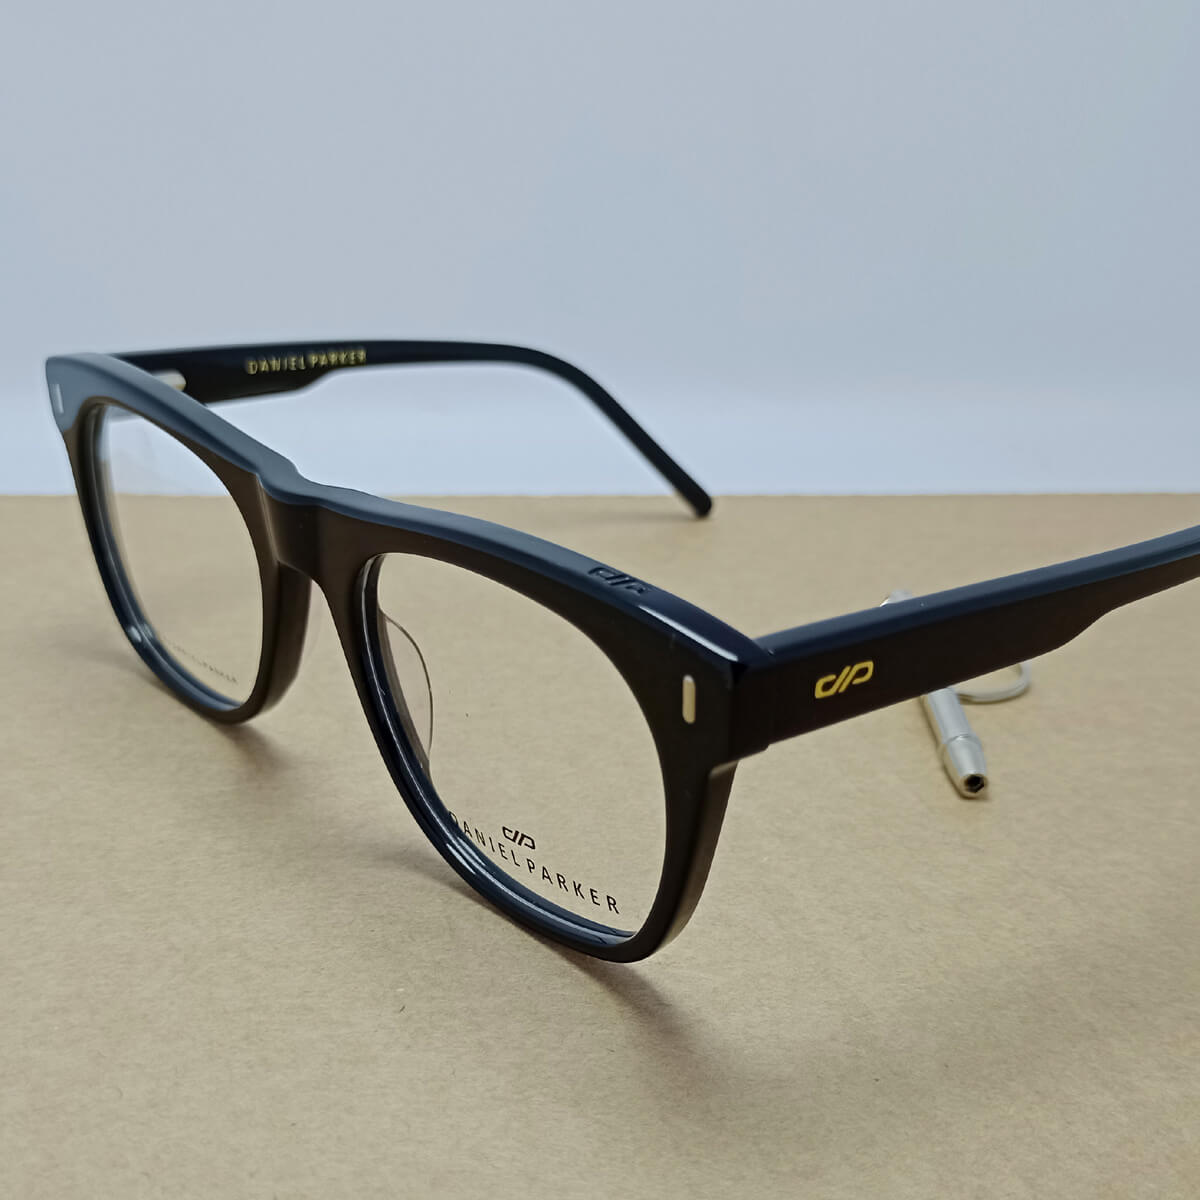 Exclusively Crafted Daniel Parker Eyeglasses Frame Nine Optic